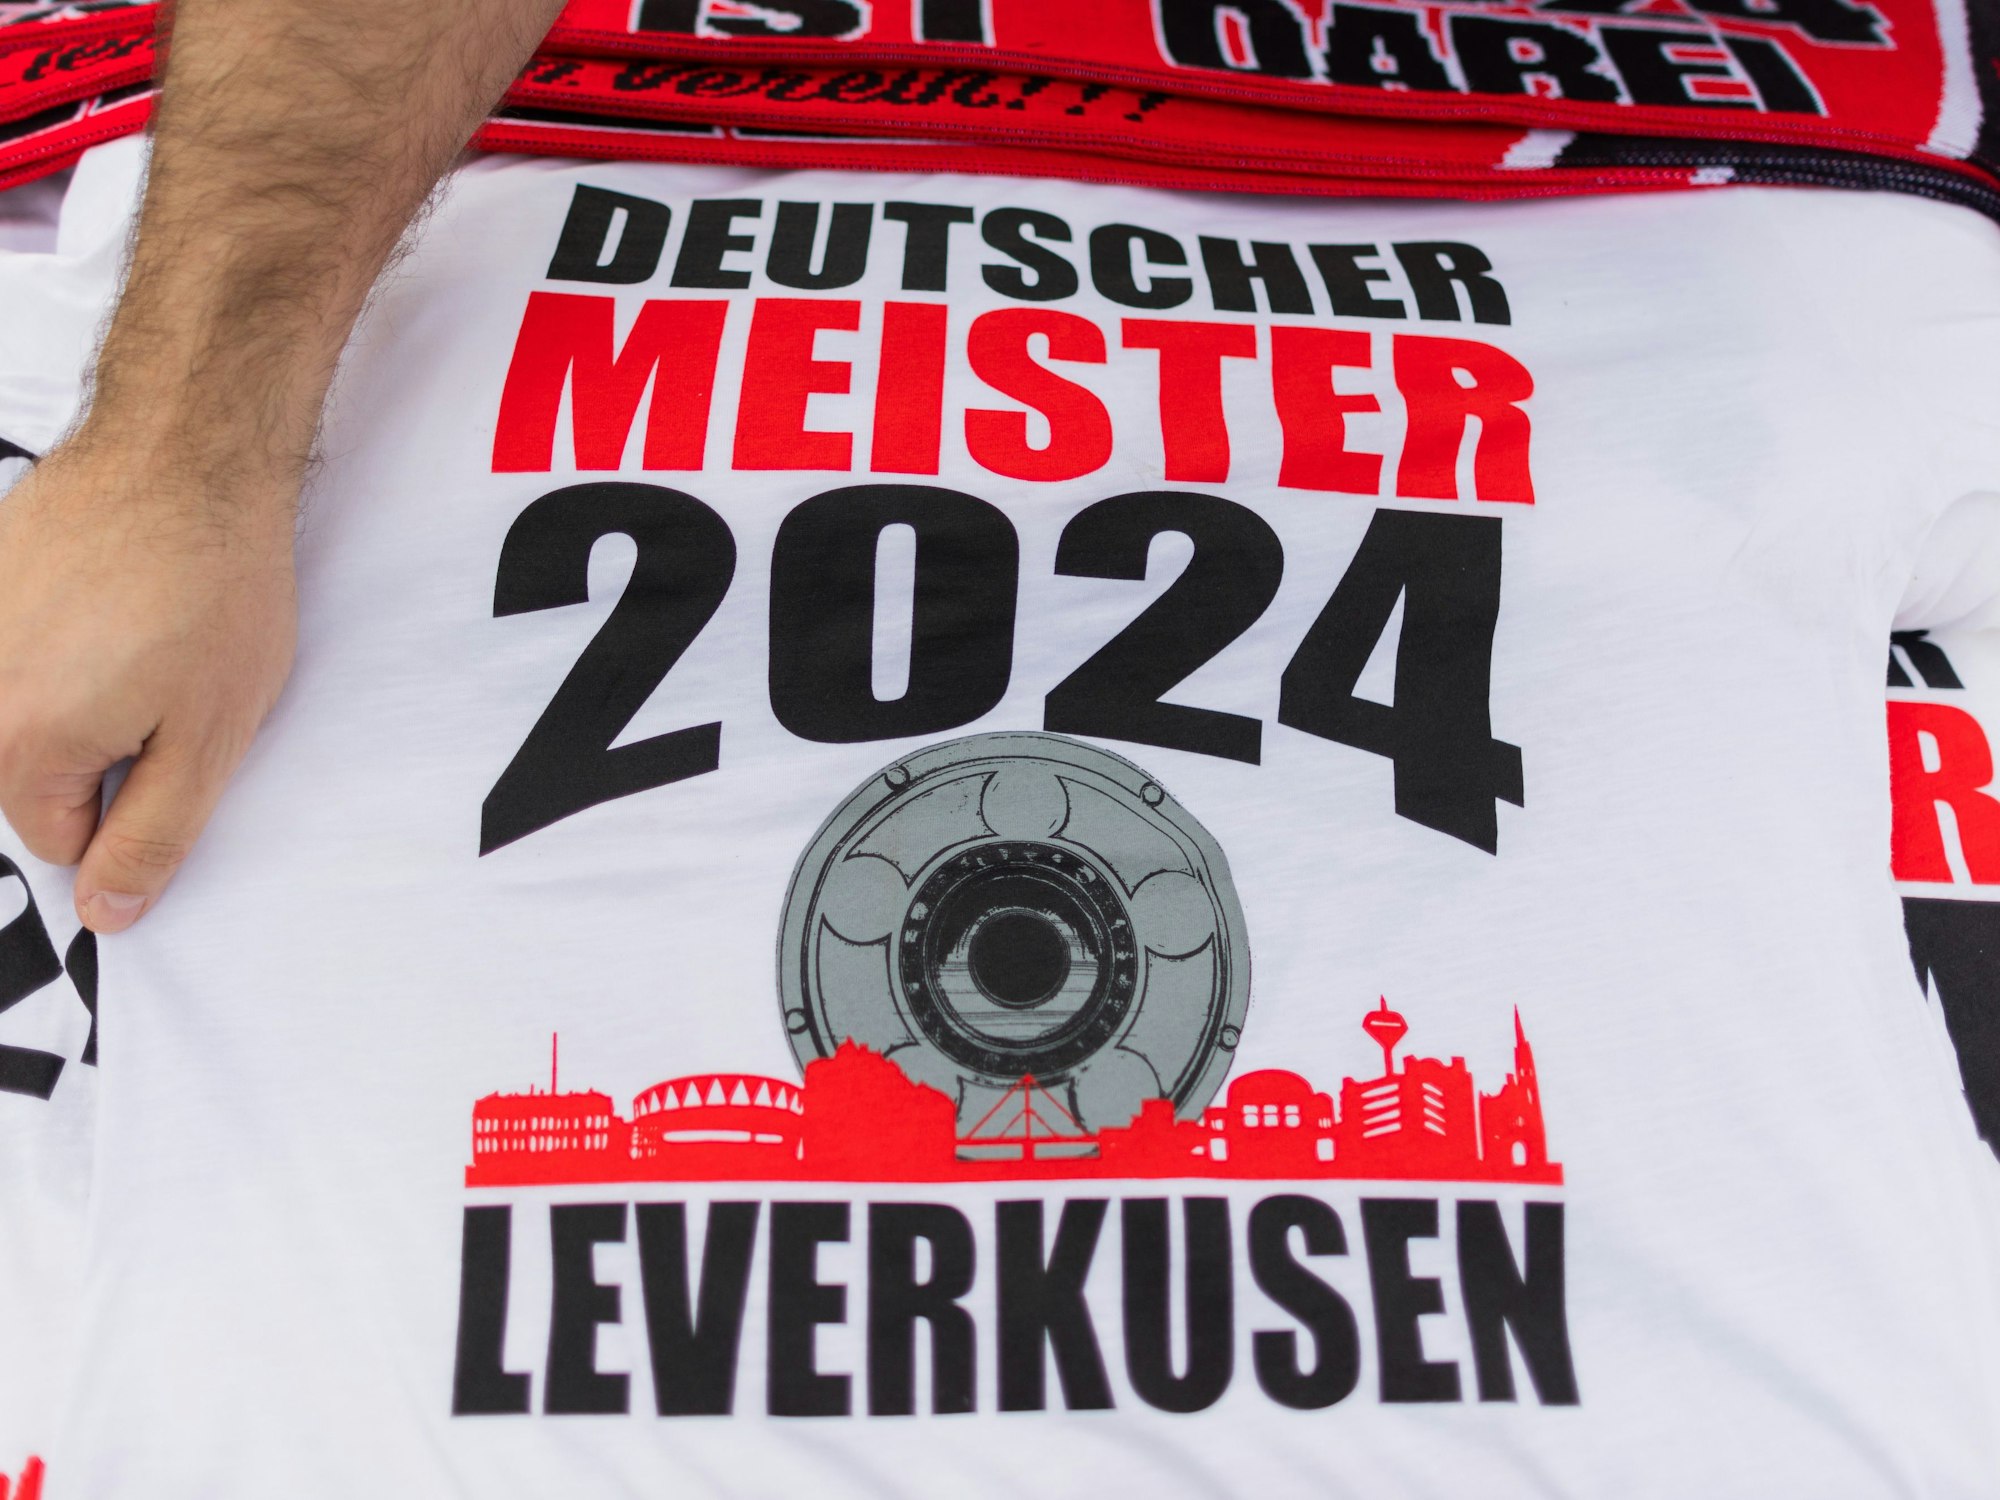 Ein Händler bietet T-Shirts mit der Aufschrift ·Deutscher Meister 2024 - Leverkusen· an.